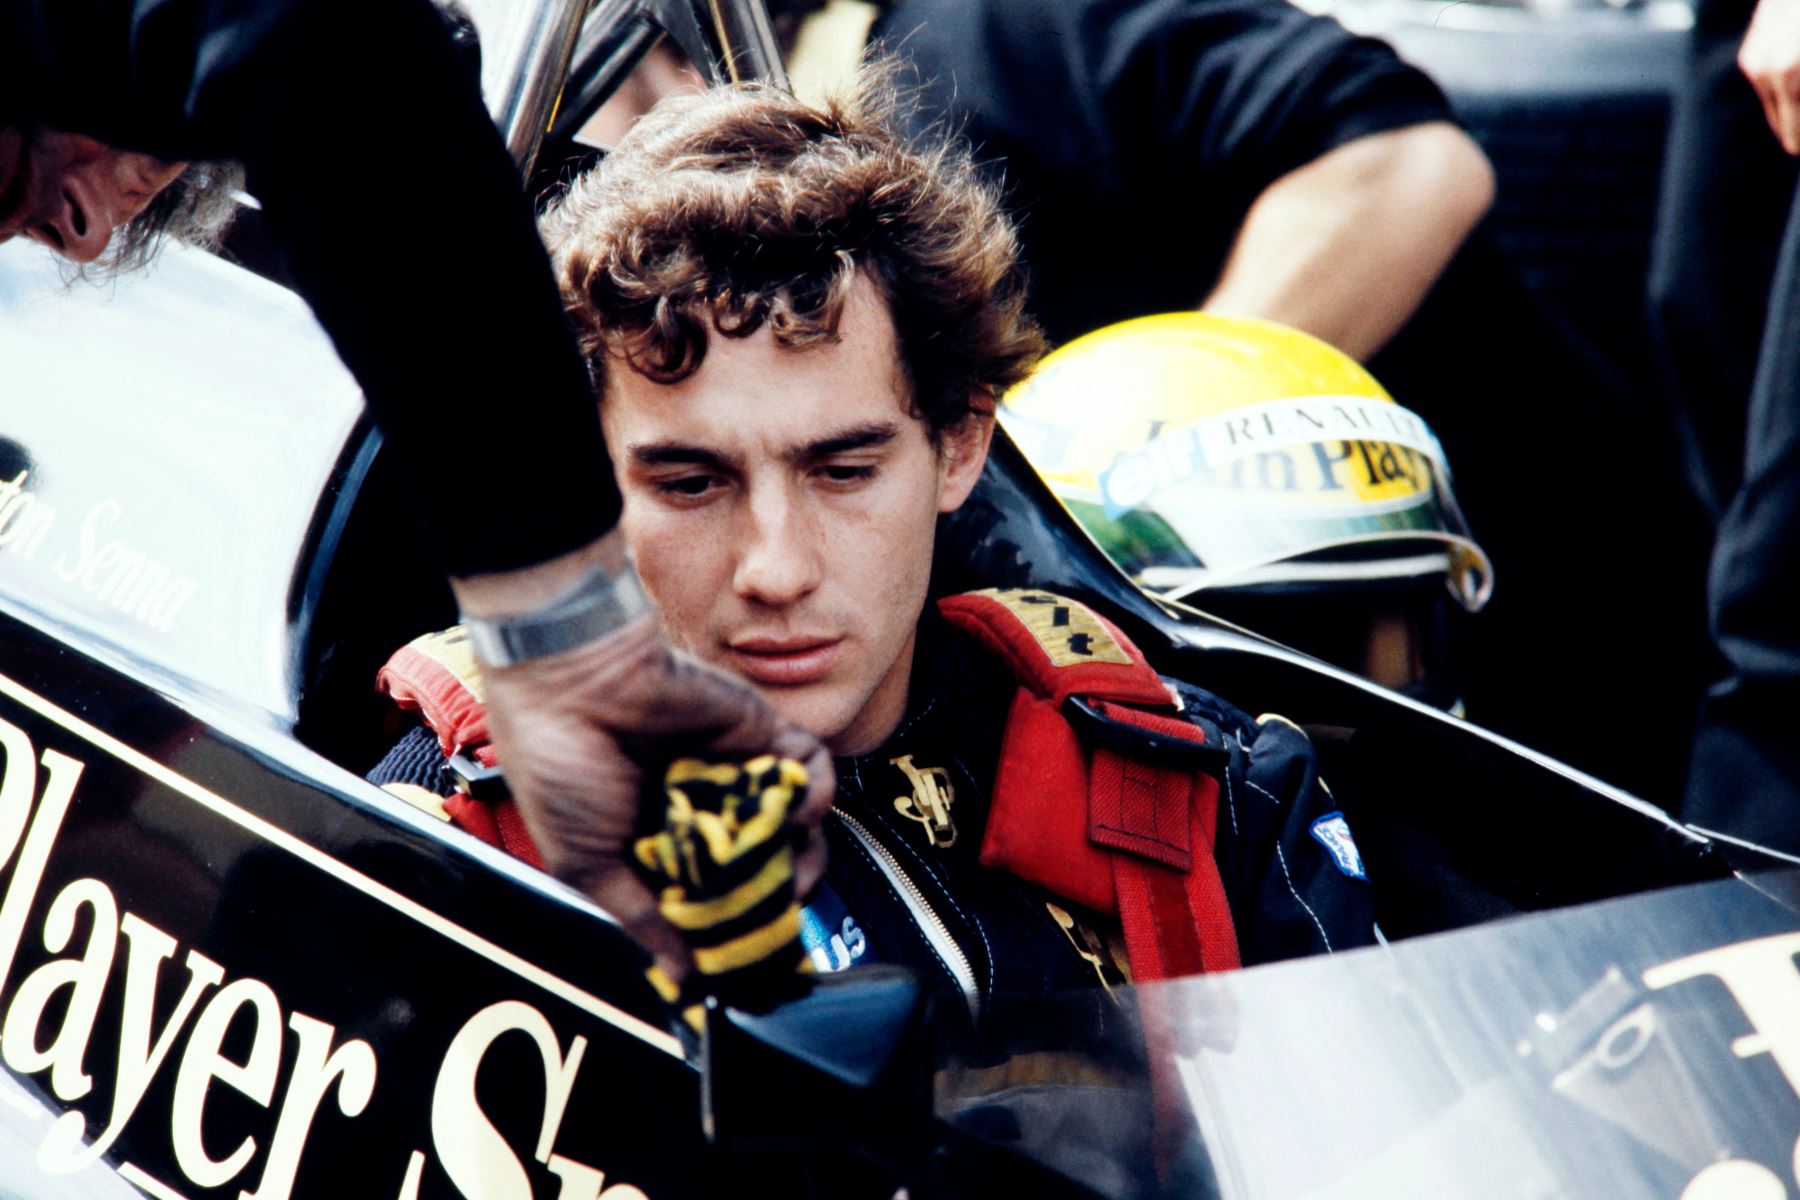 El piloto brasileño de Fórmula Uno Ayrton Senna se concentra a bordo del Lotus 97T el 23 de agosto de 1985 durante el Gran Premio de Holanda celebrado en el Circuito de Zandvoort.
Foto: AFP